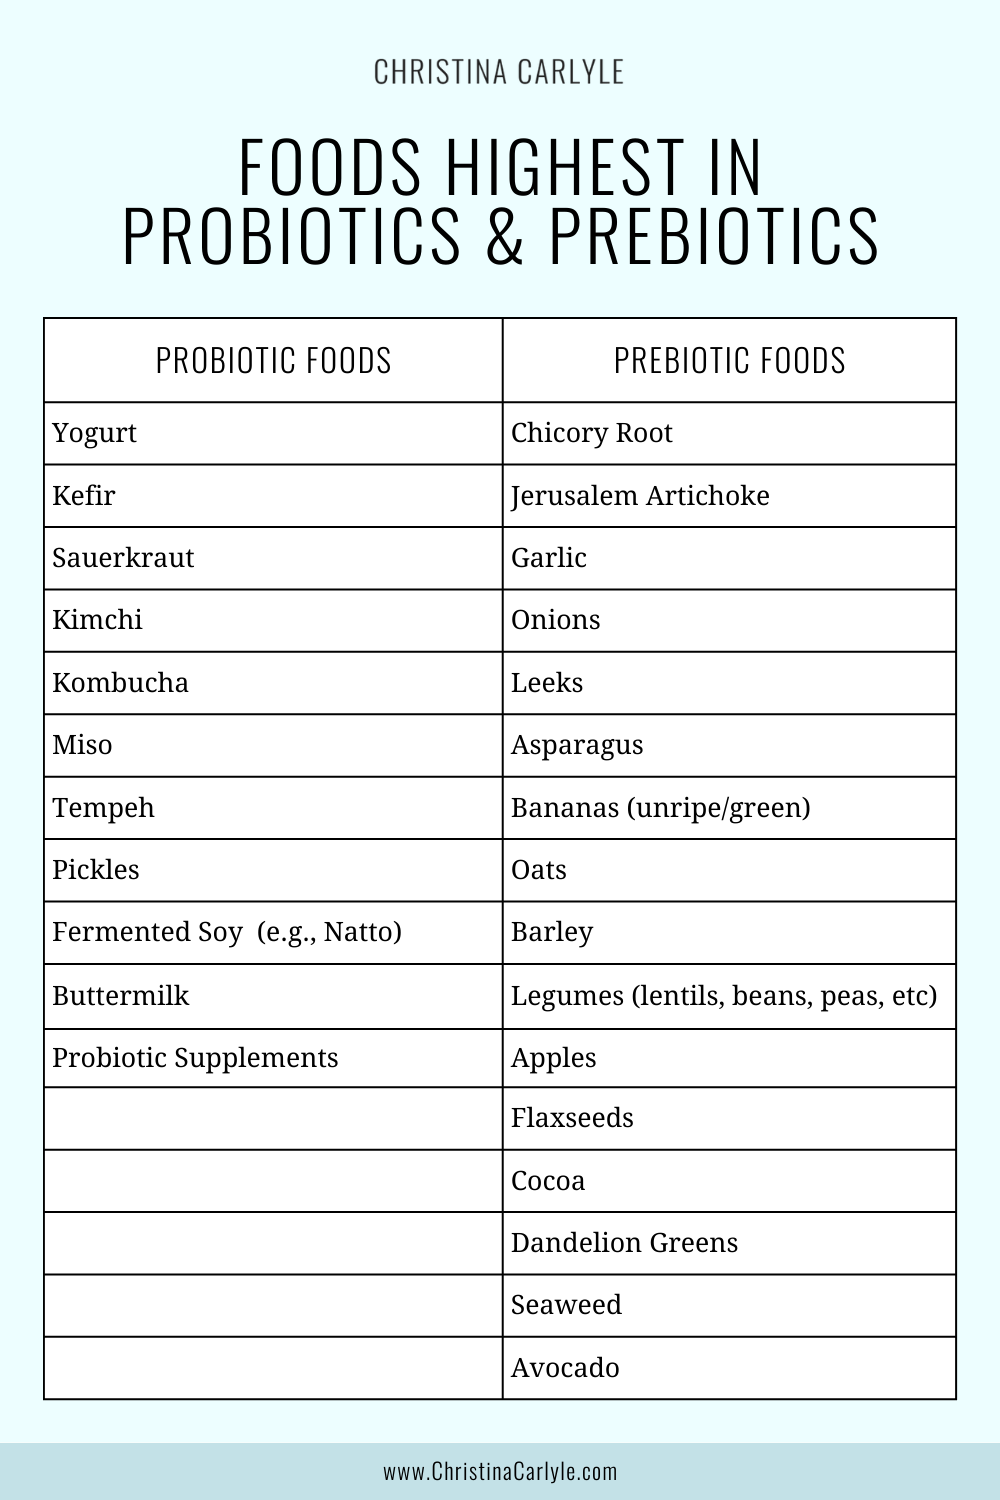 a chart of food highest in probiotics and prebiotics